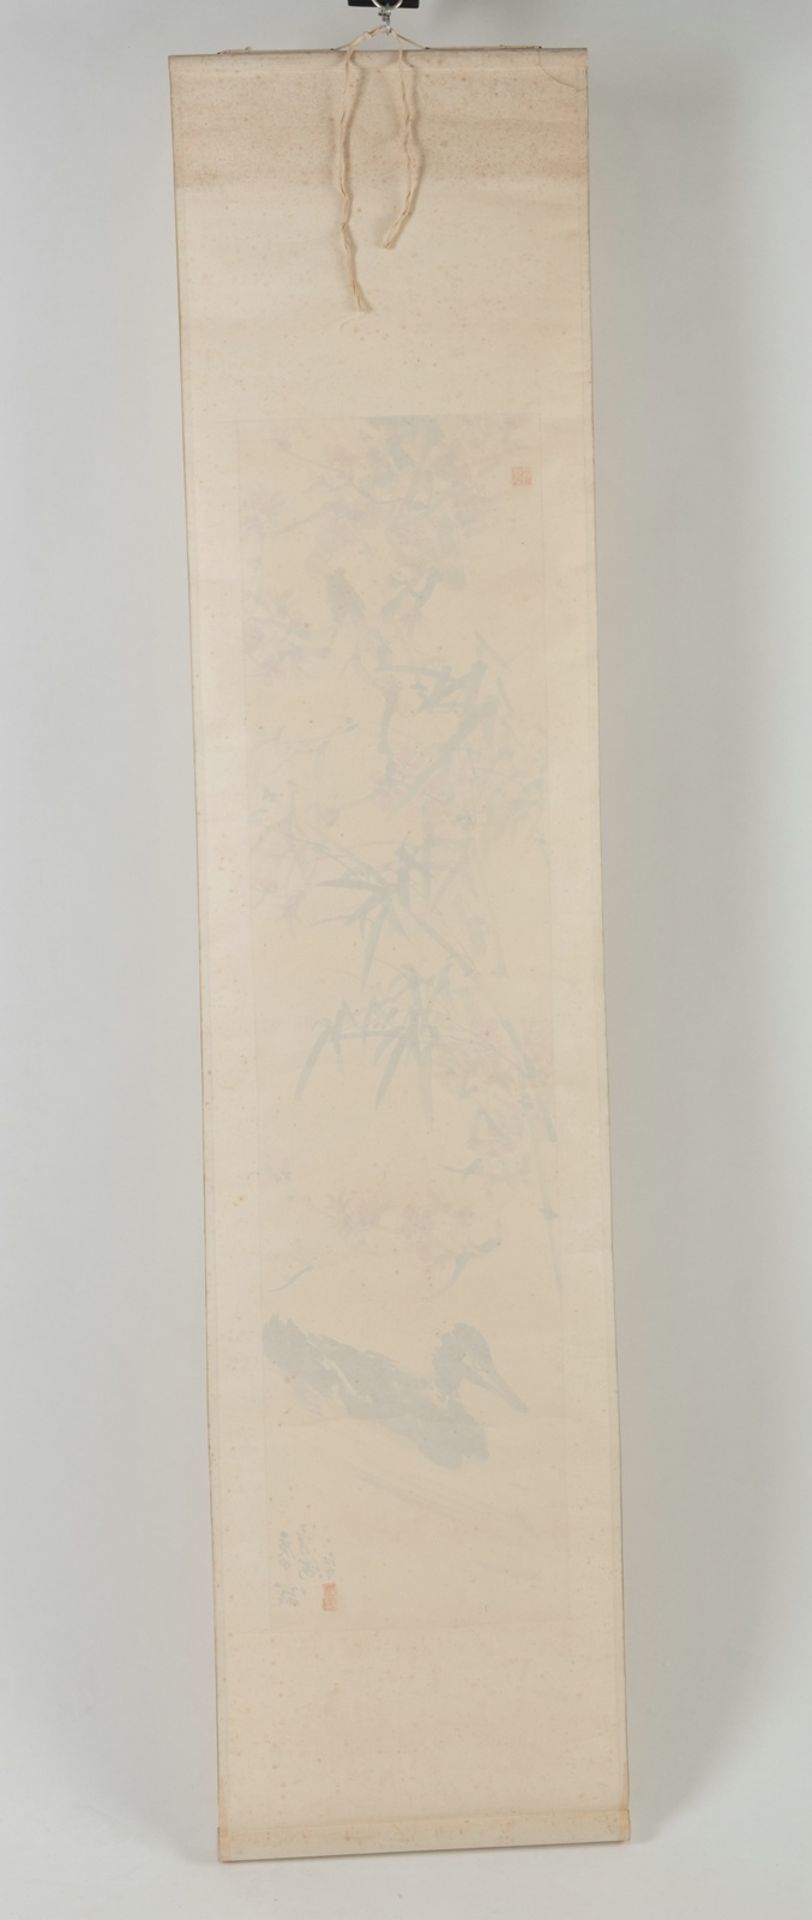 Zwei Malereien auf Papier: Kraniche über einer Kiefer bzw. Ente im Wasser unter Bambus und blühende - Bild 9 aus 10